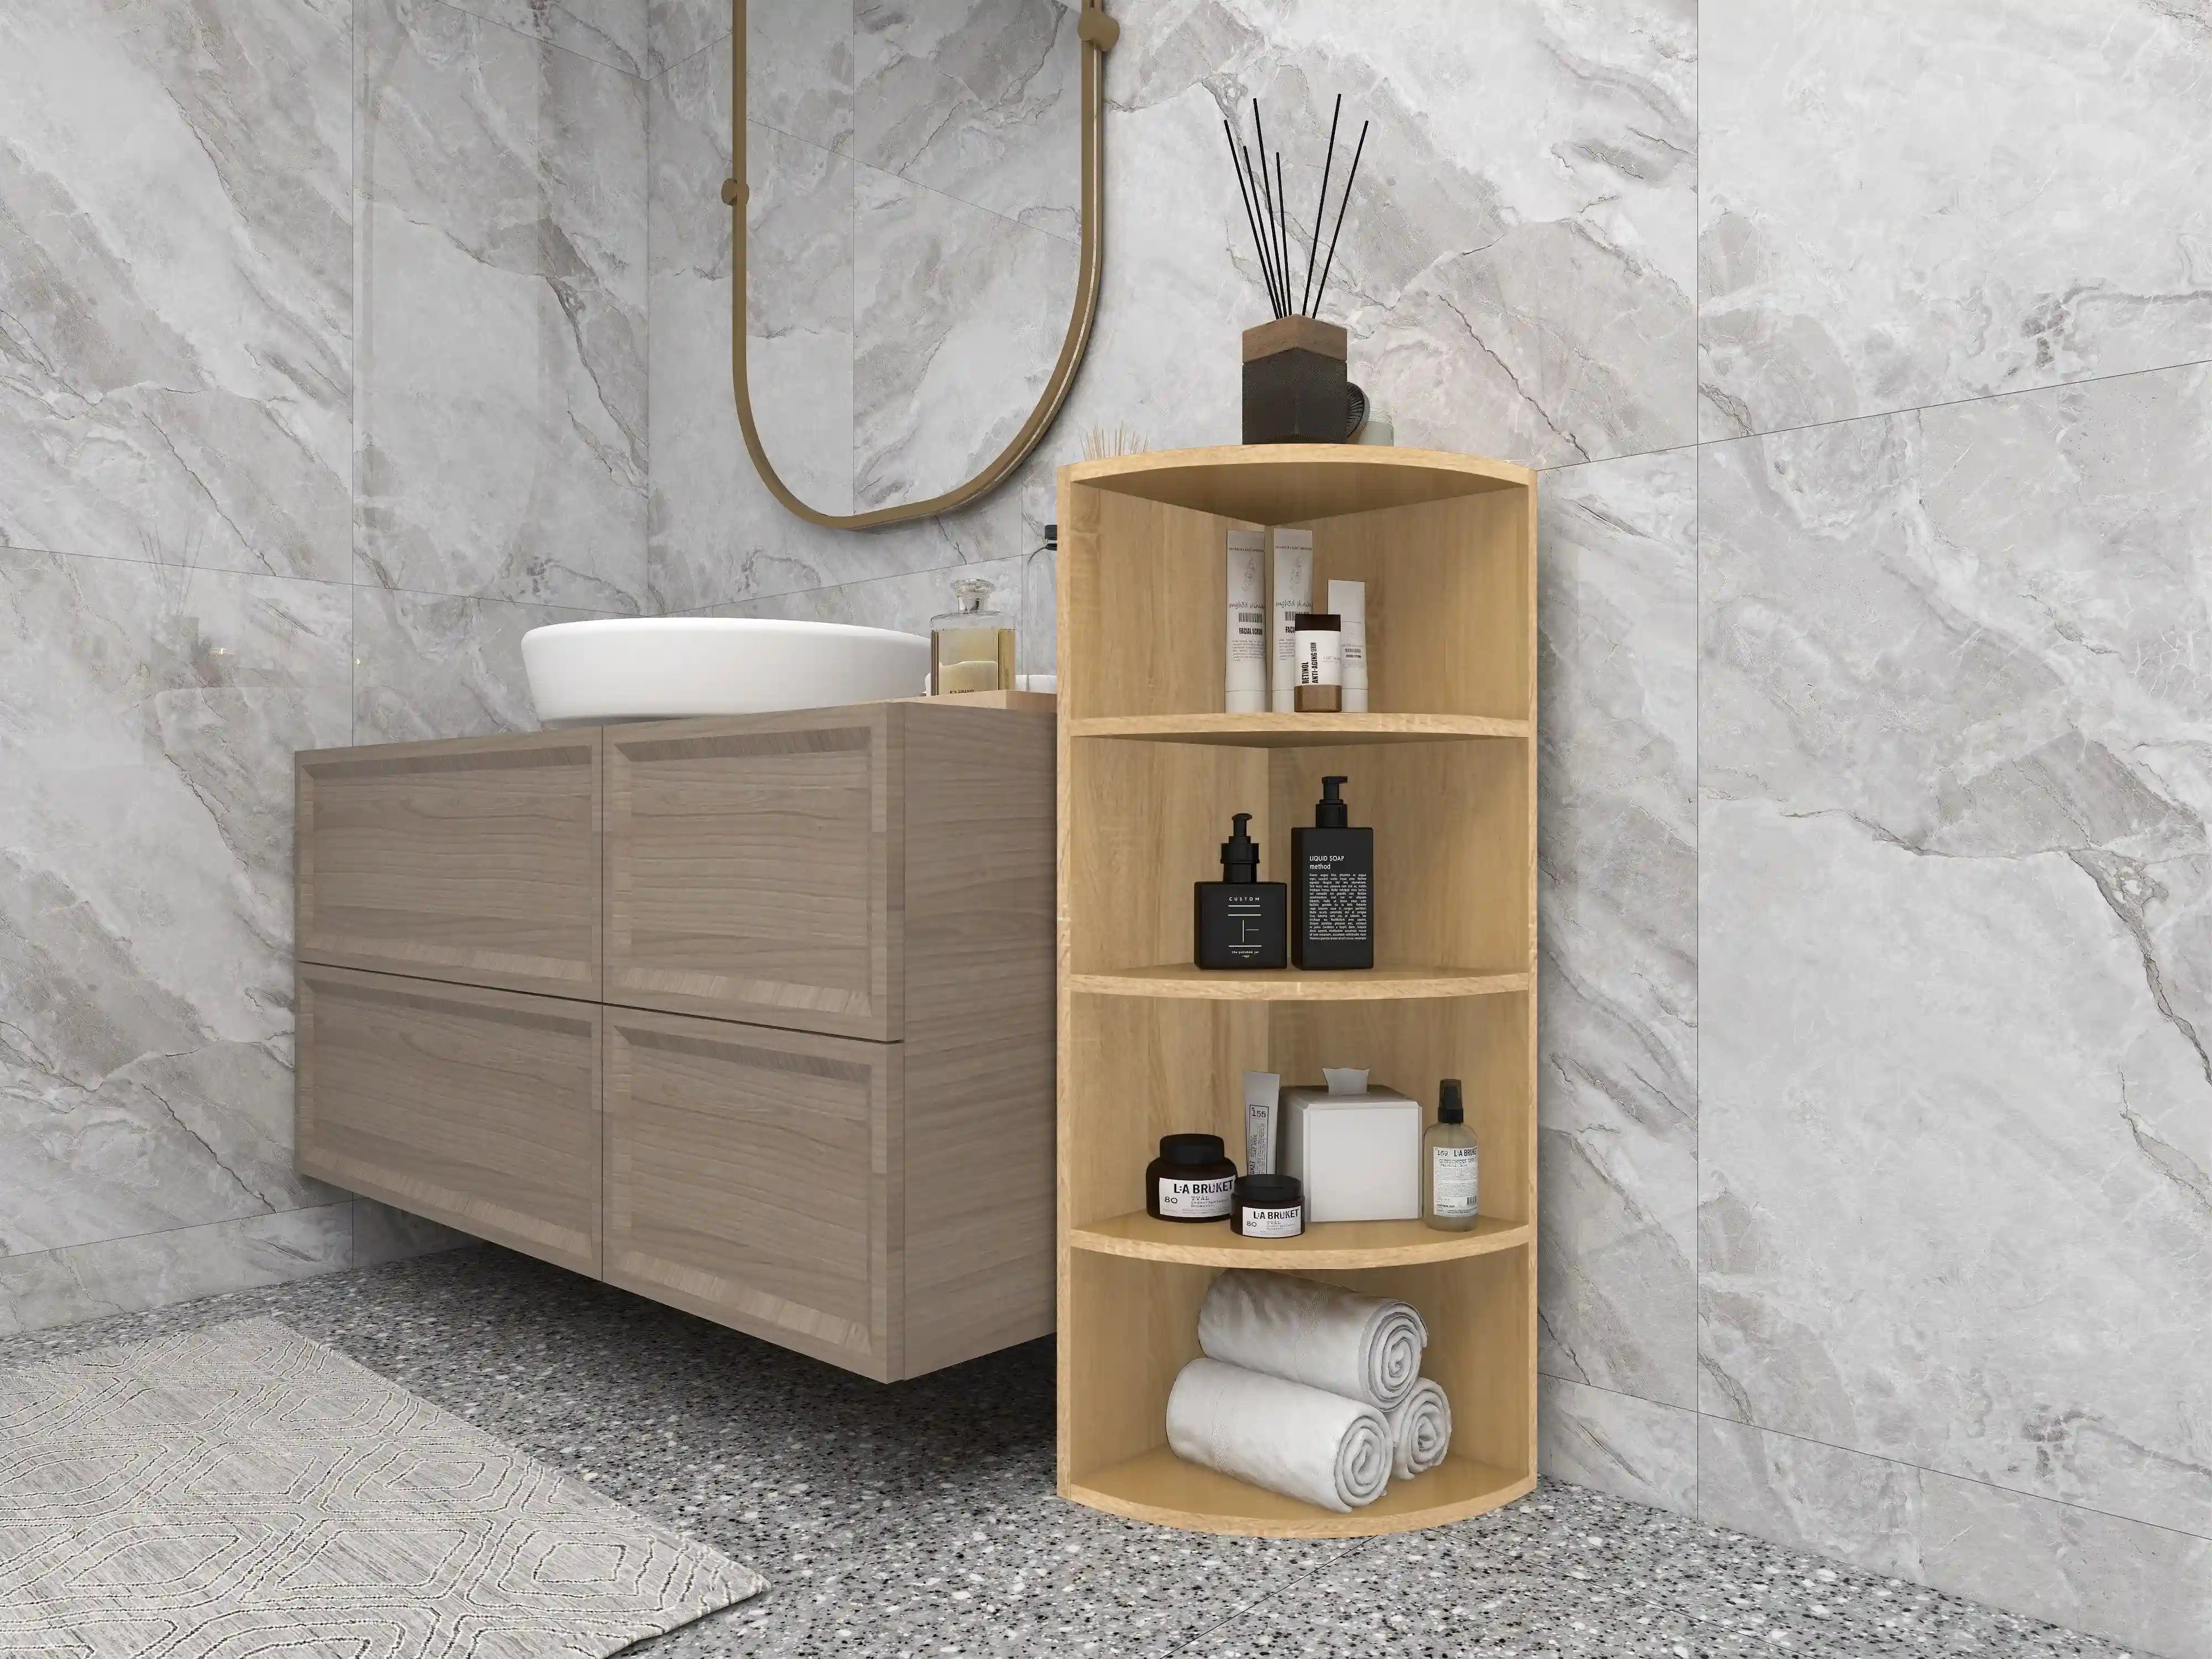 Ein modernes Badezimmer mit einem eleganten Eckregal, das stilvolle Aufbewahrungslösungen bietet.